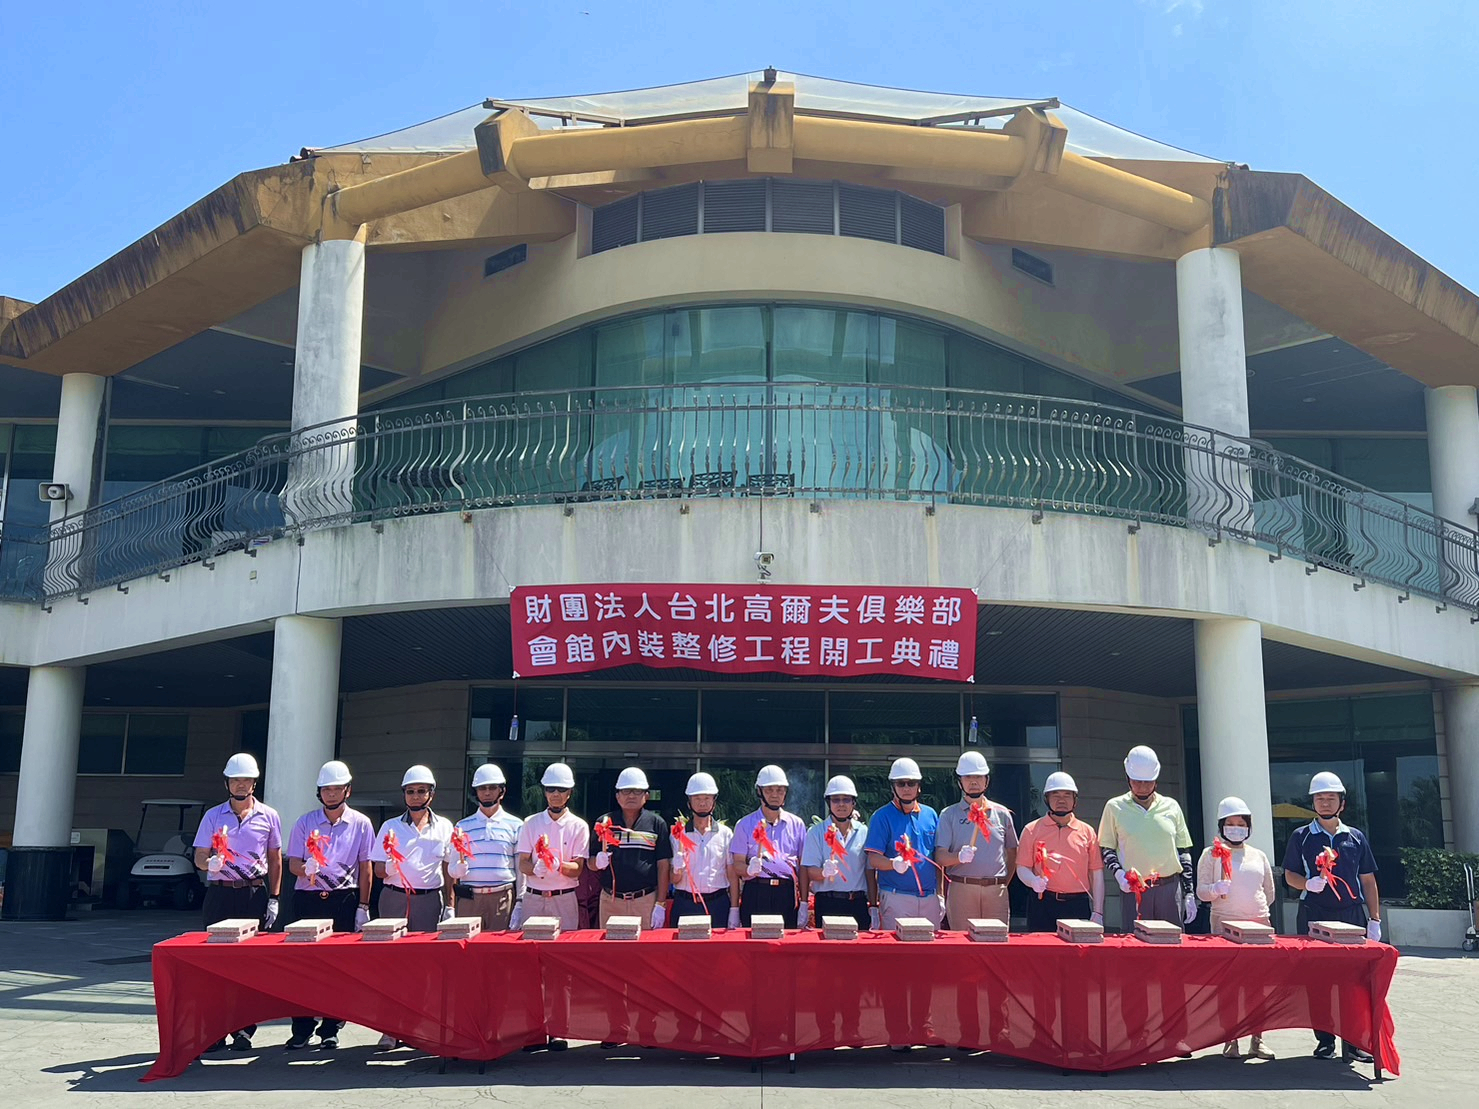 台北球場於9月26日為會館內部裝修工程舉行動工典禮。(圖片提供 / 財團法人台北高爾夫俱樂部)